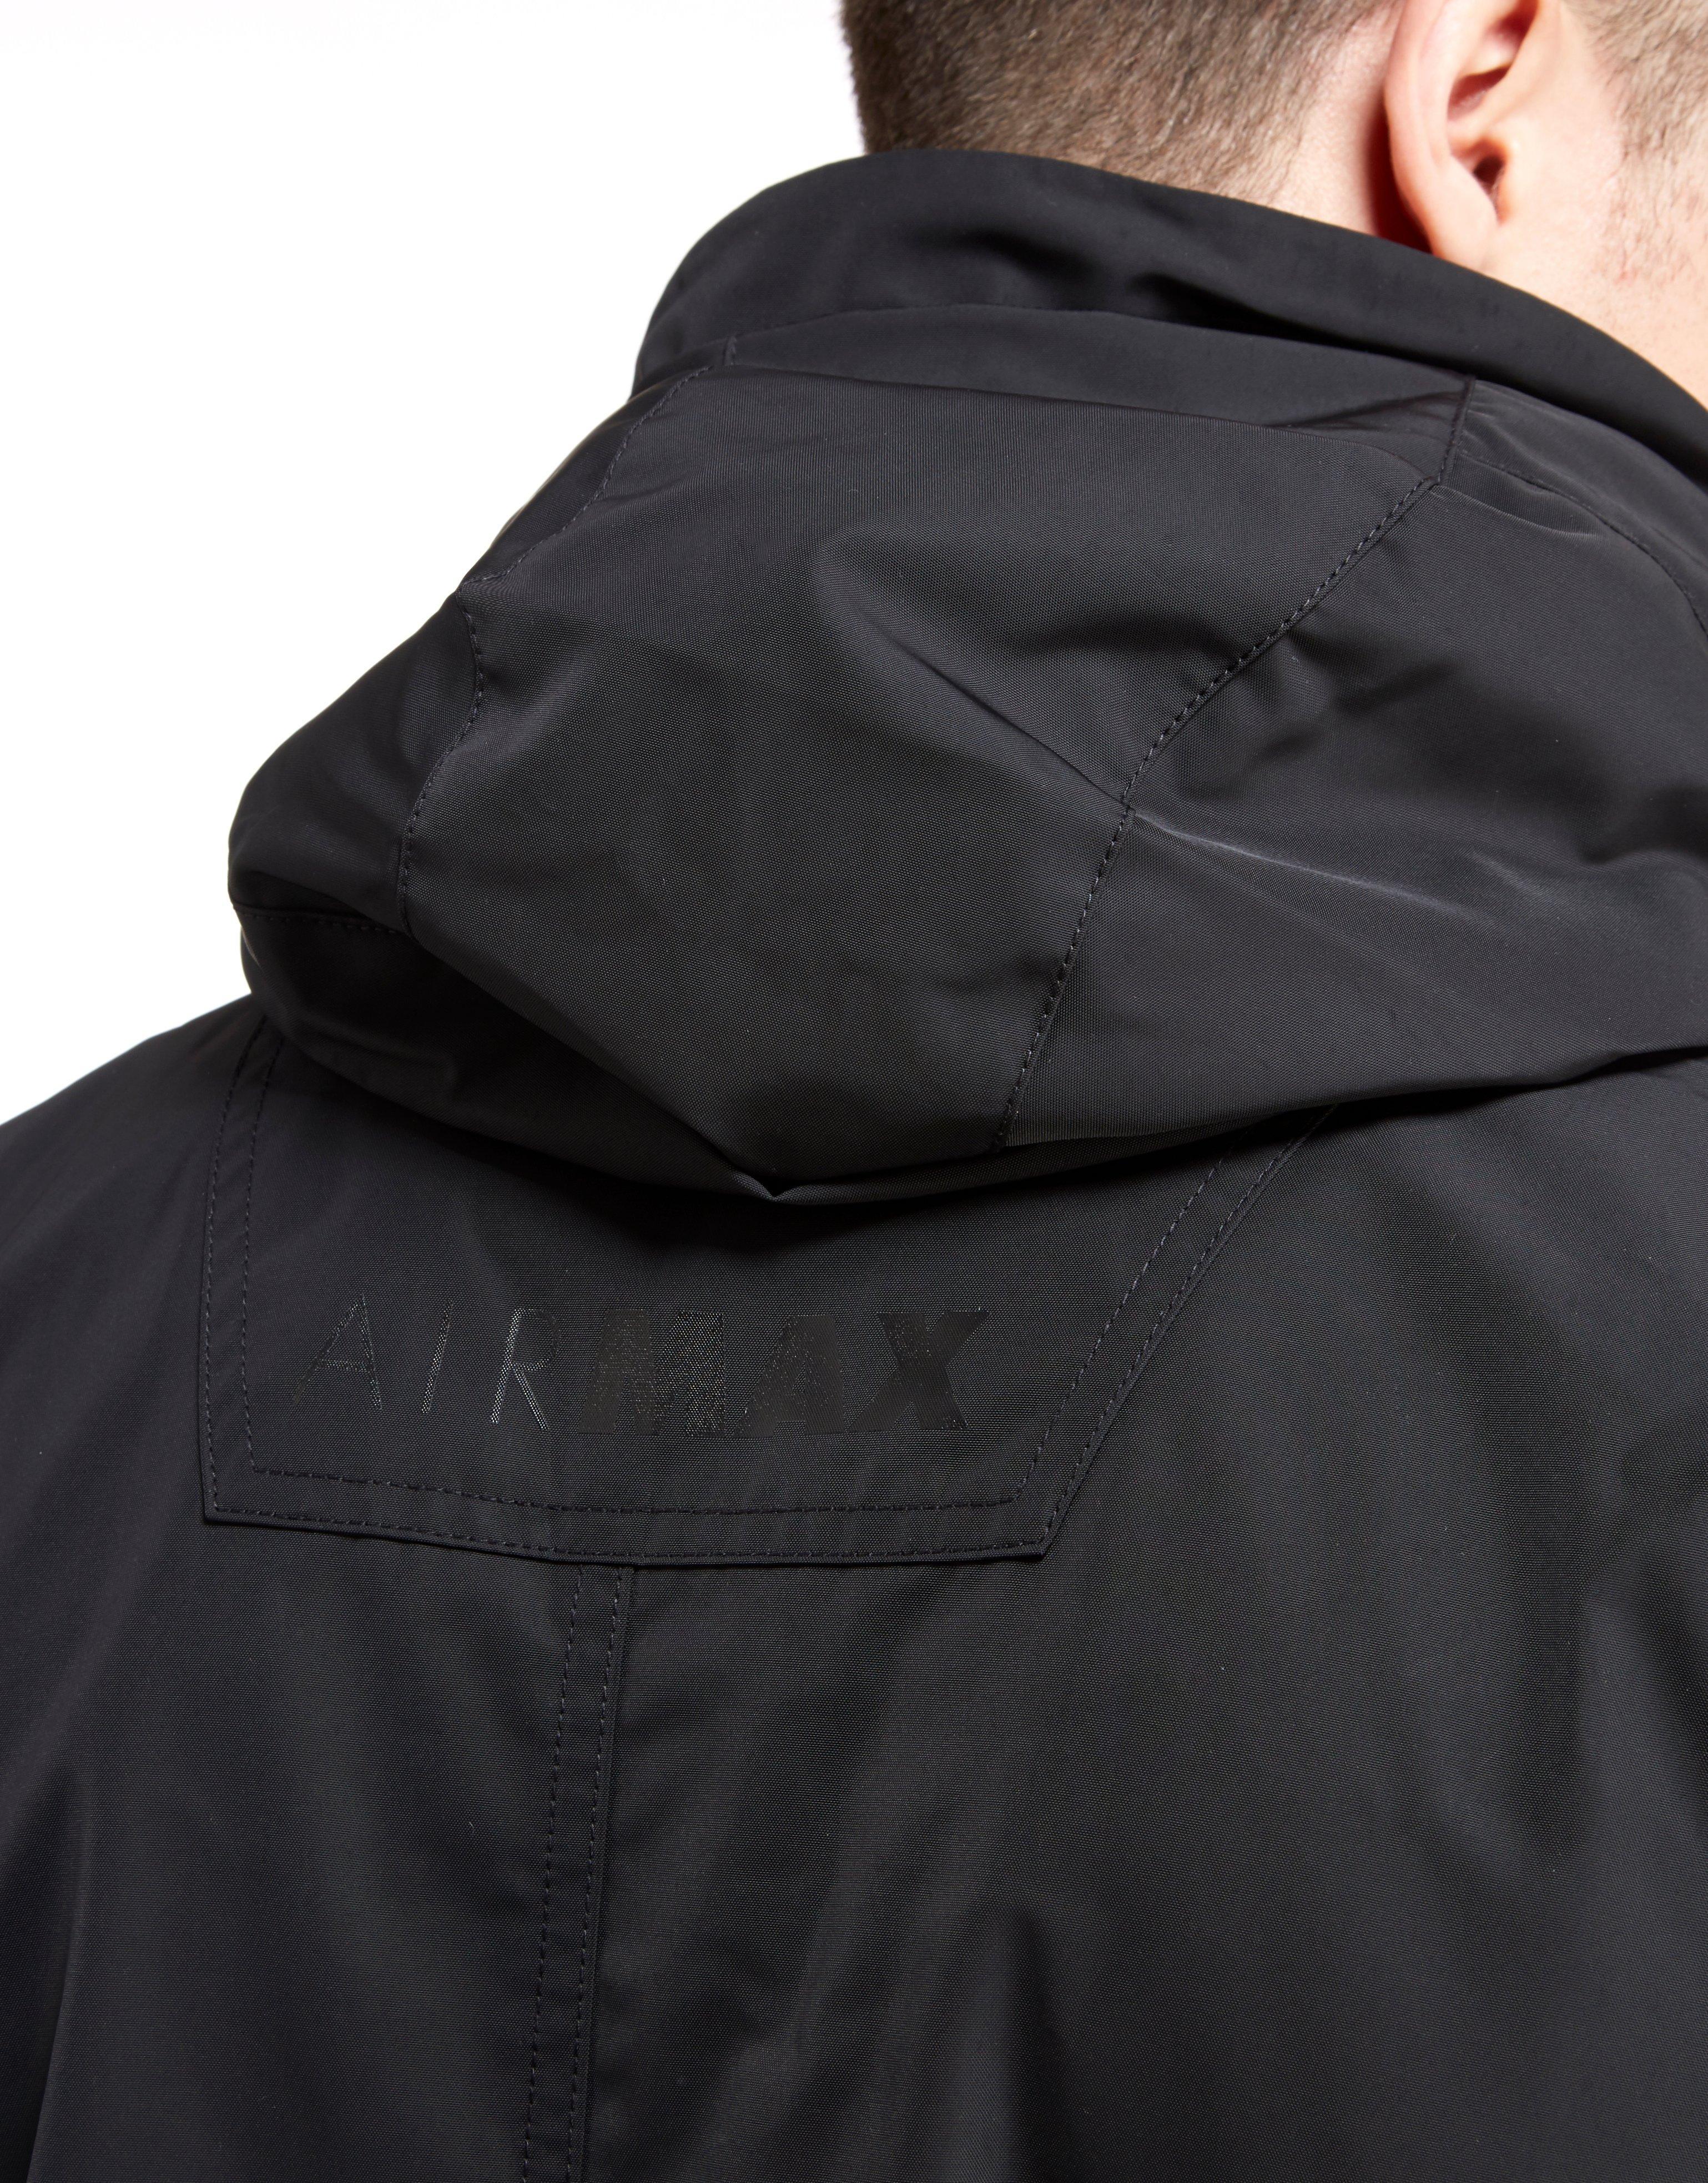 מפרקים הגעה חדשה חייב nike air max half zip jacket - pierre-art.fr